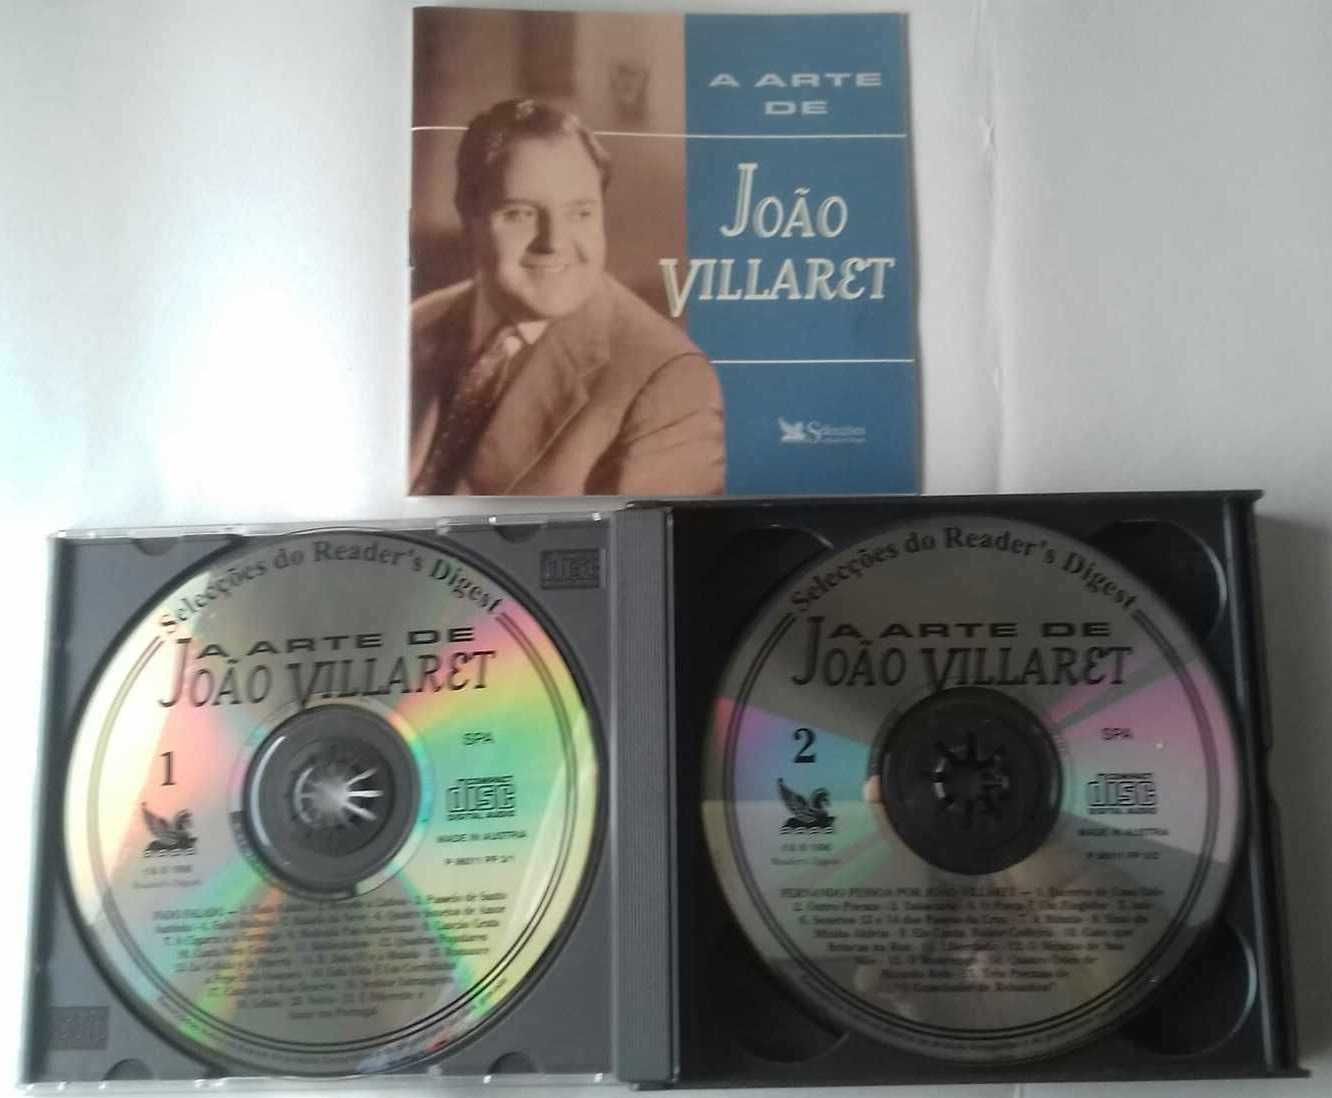 Caixa 4 CD’s  João Villaret  “A arte de João Villaret ”